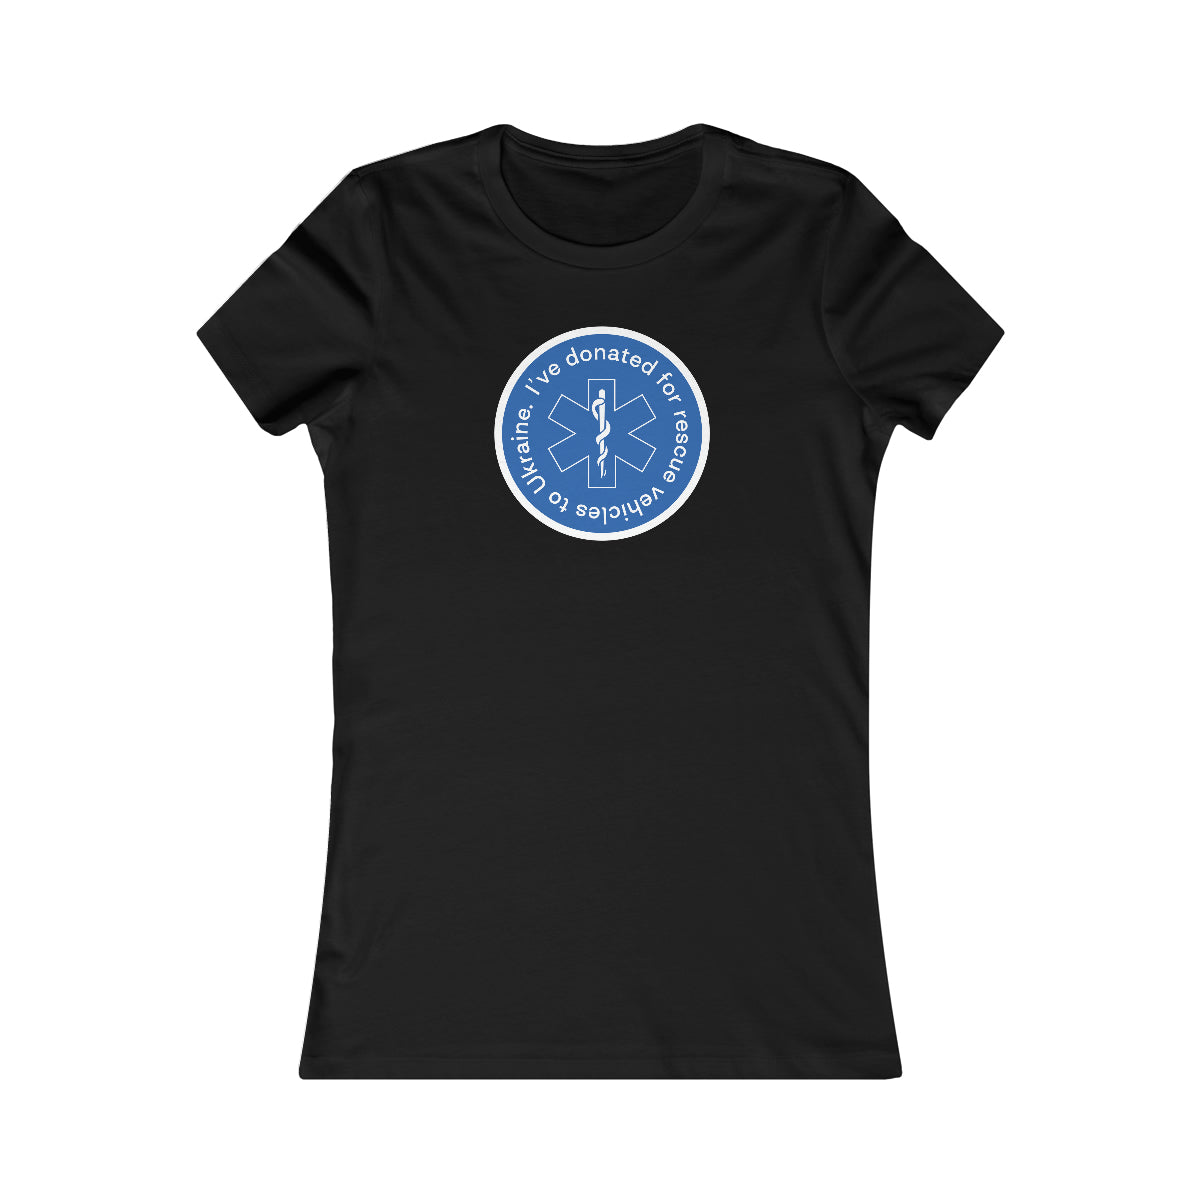 Gespendet - Lieblings-T-Shirt der Frauen